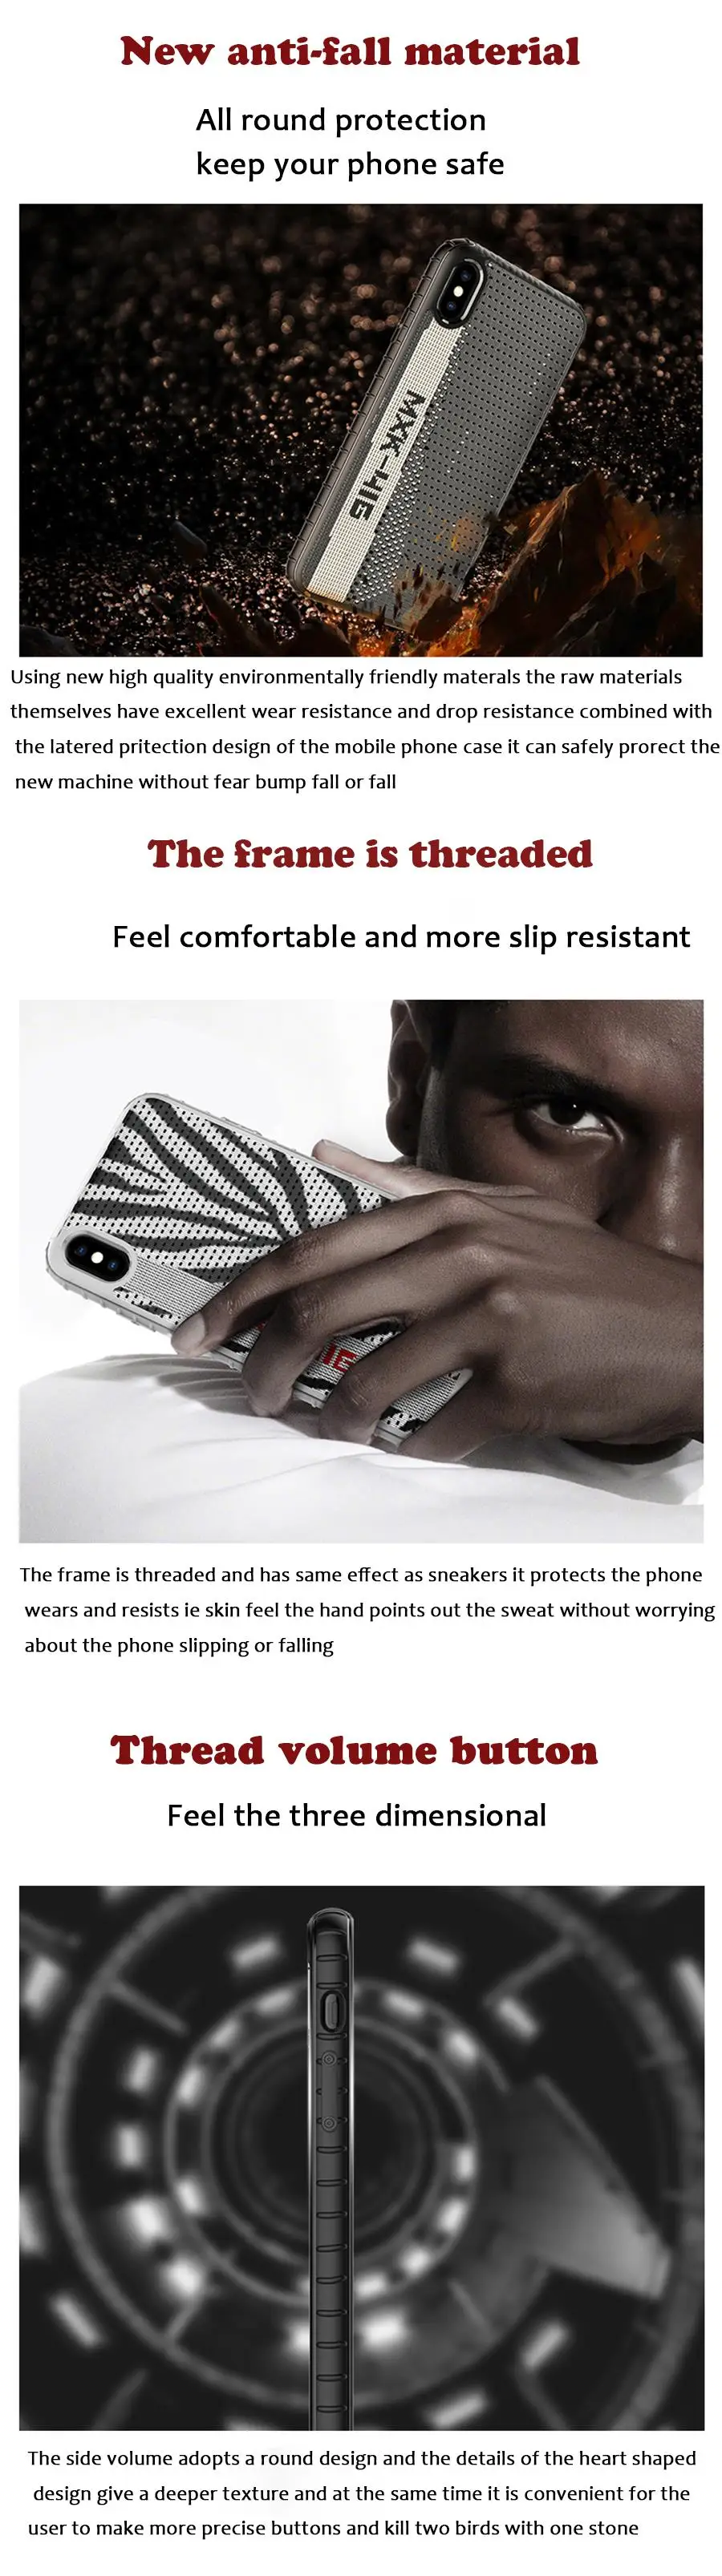 Global Kanye West BOOST 350 V2 Силиконовый чехол для iPhone 7 8 6 6s Plus 11 Pro Max X XS XR карбоновый волокнистый слой резины чехол для телефона